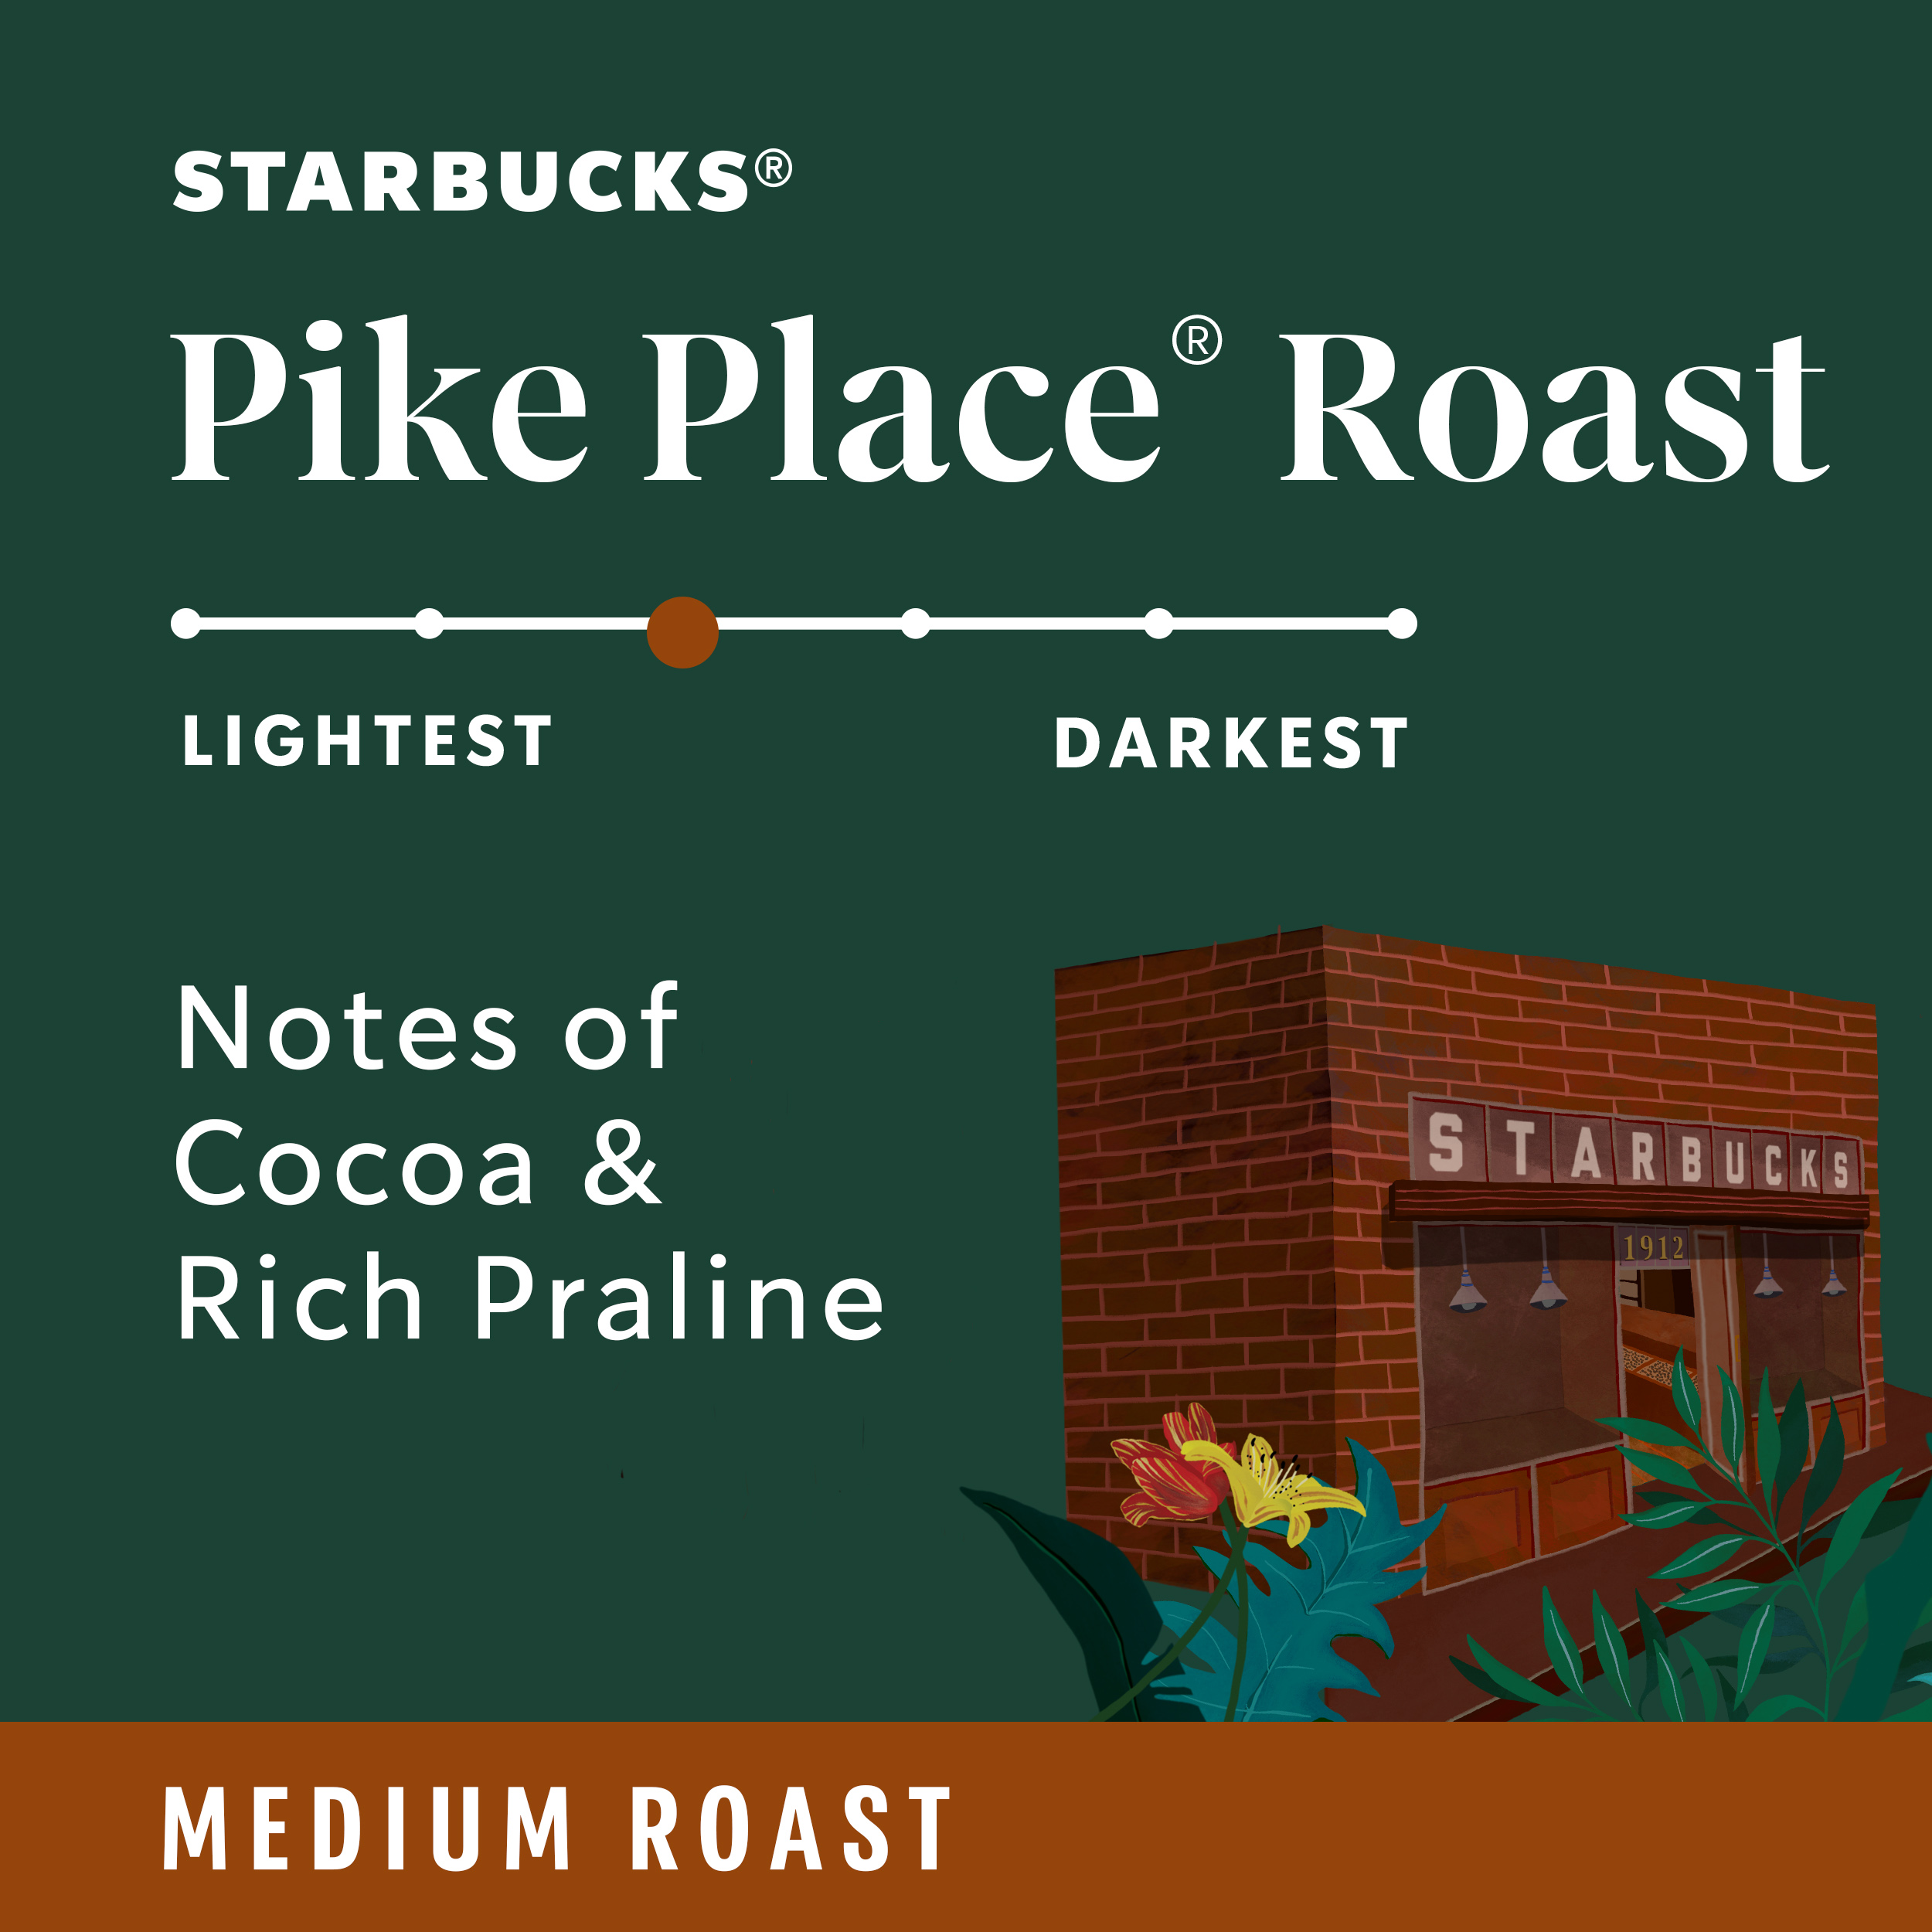 Starbucks Pike Place Roast, Medium Roast Ground Coffee, 100% Arabica, 12 oz - image 4 of 8